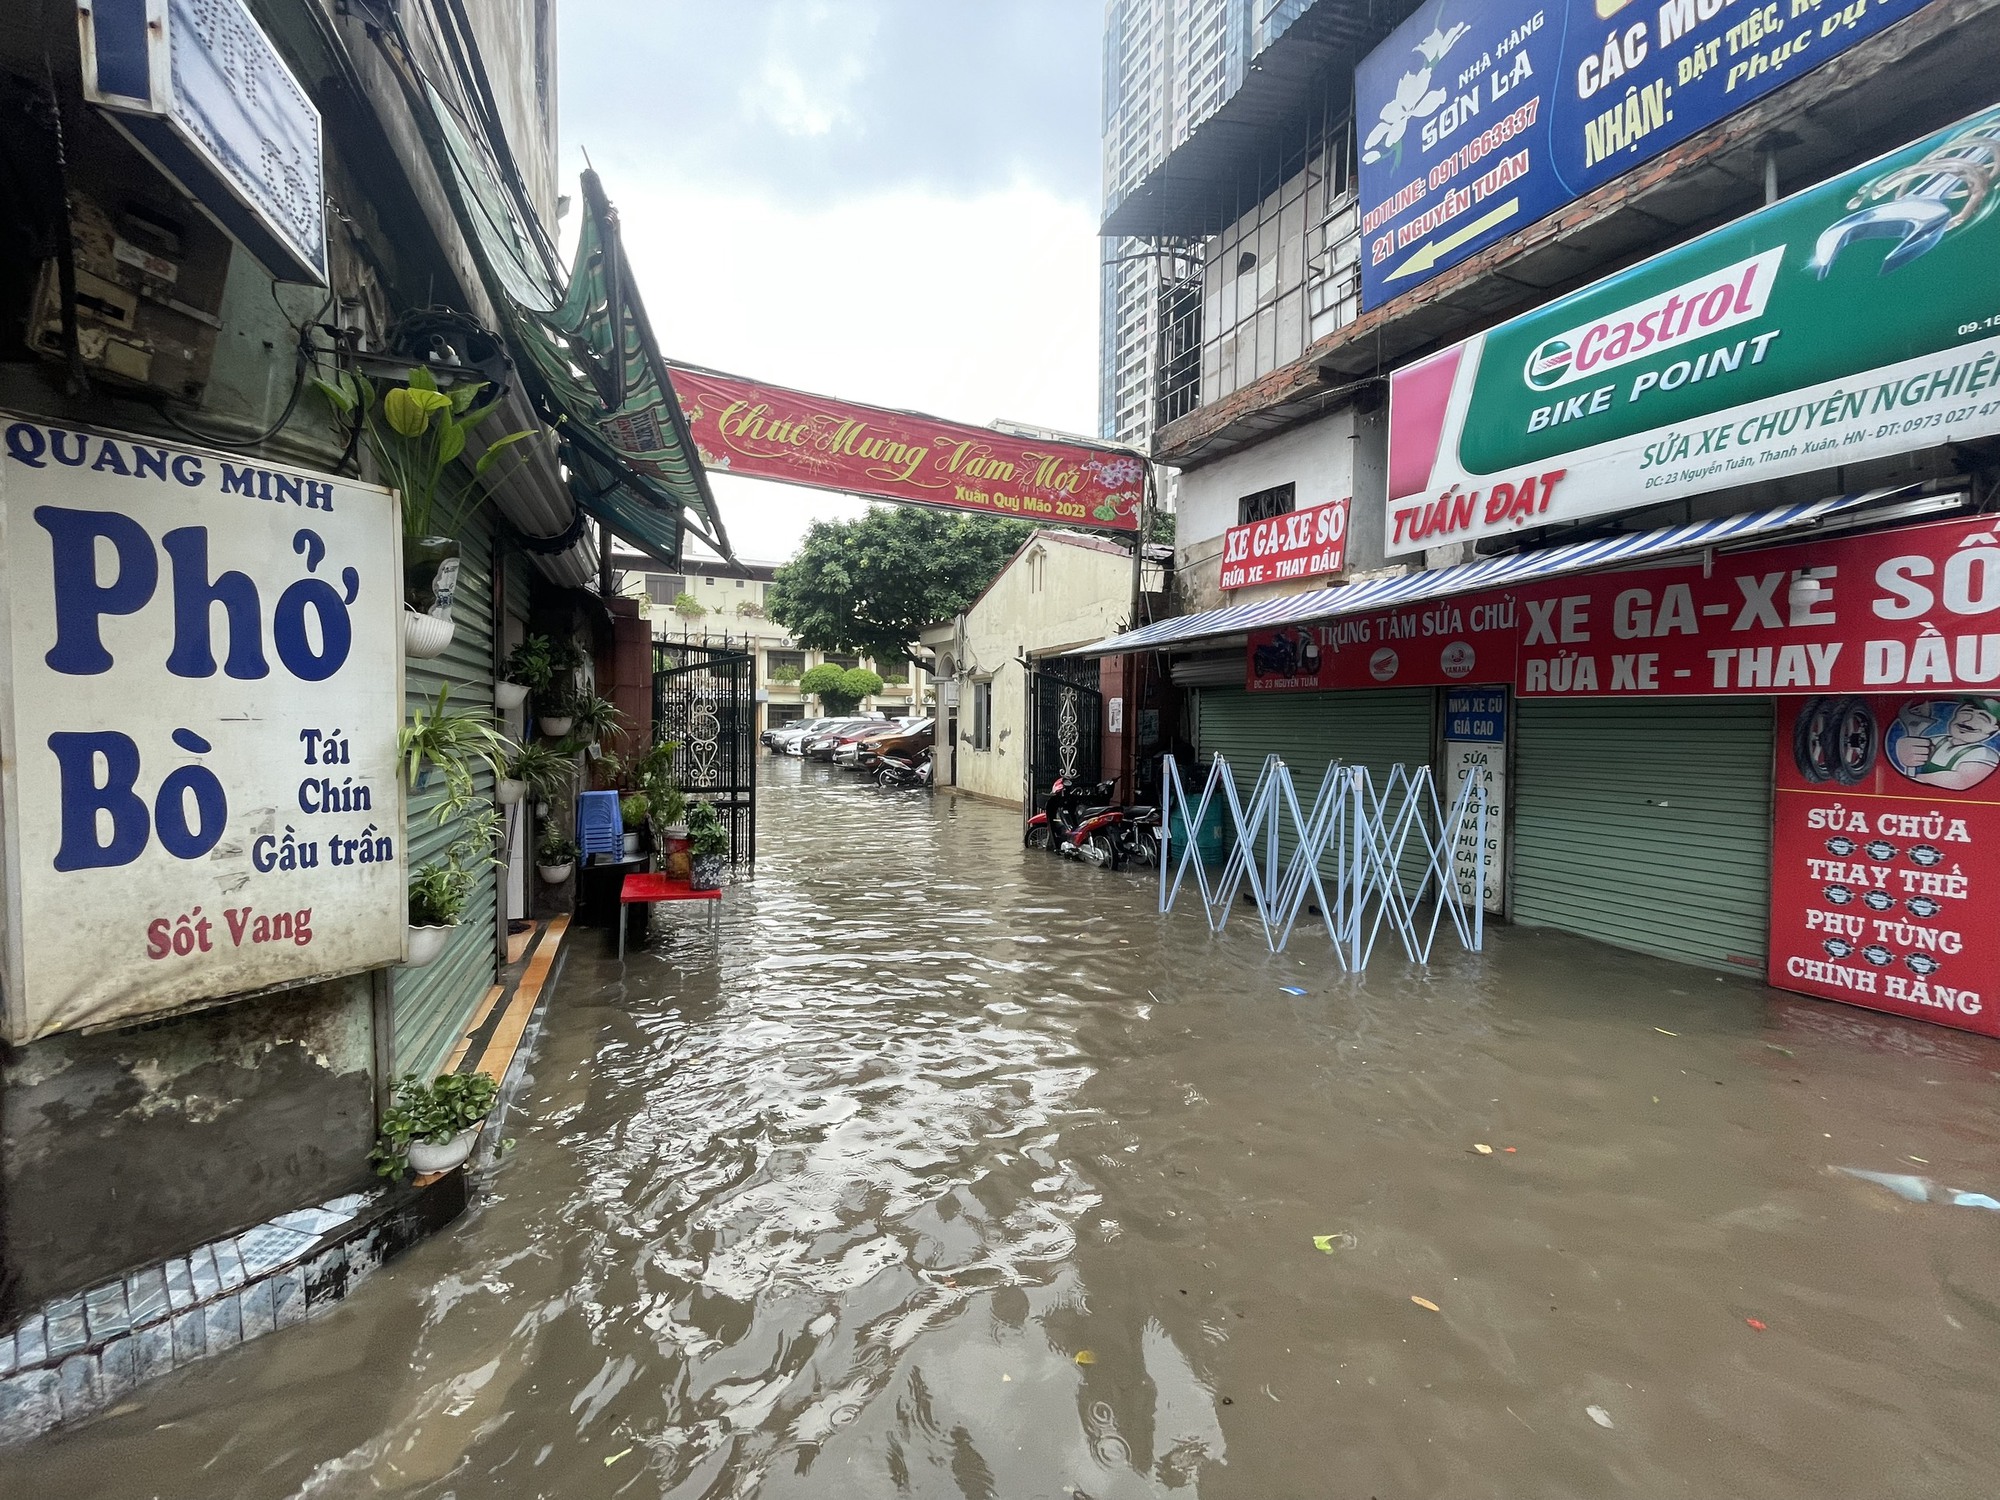 Hà Nội: Hình ảnh nhiều tuyến đường ngập sau cơn mưa giải nhiệt - Ảnh 2.